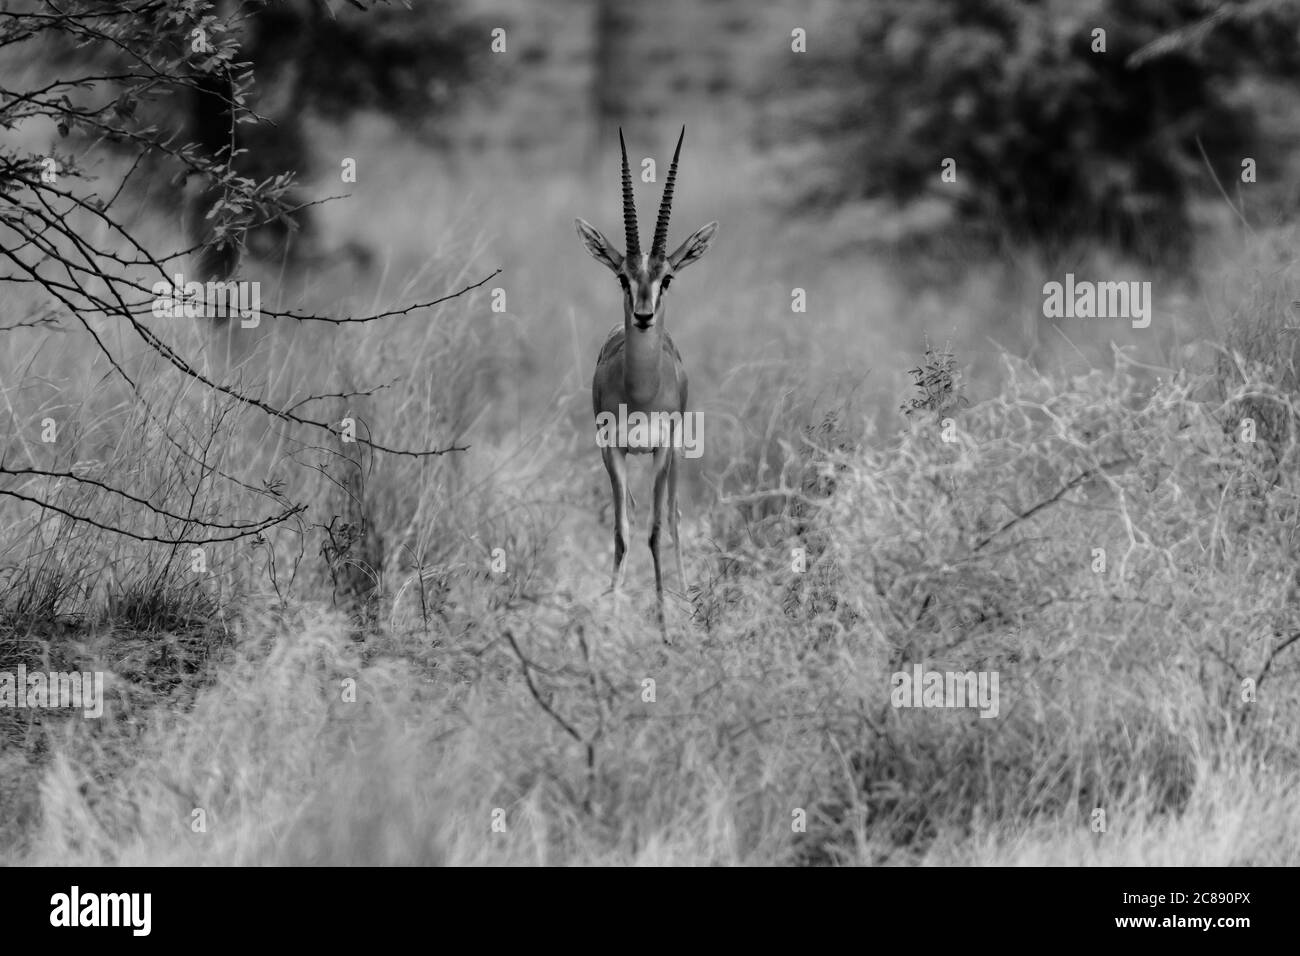 Un'immagine monocromatica di un antilope indiano gazelle chiamato anche Chinkara con grandi corna appuntite che si erigano davanti alle praterie Del Rajasthan India Foto Stock